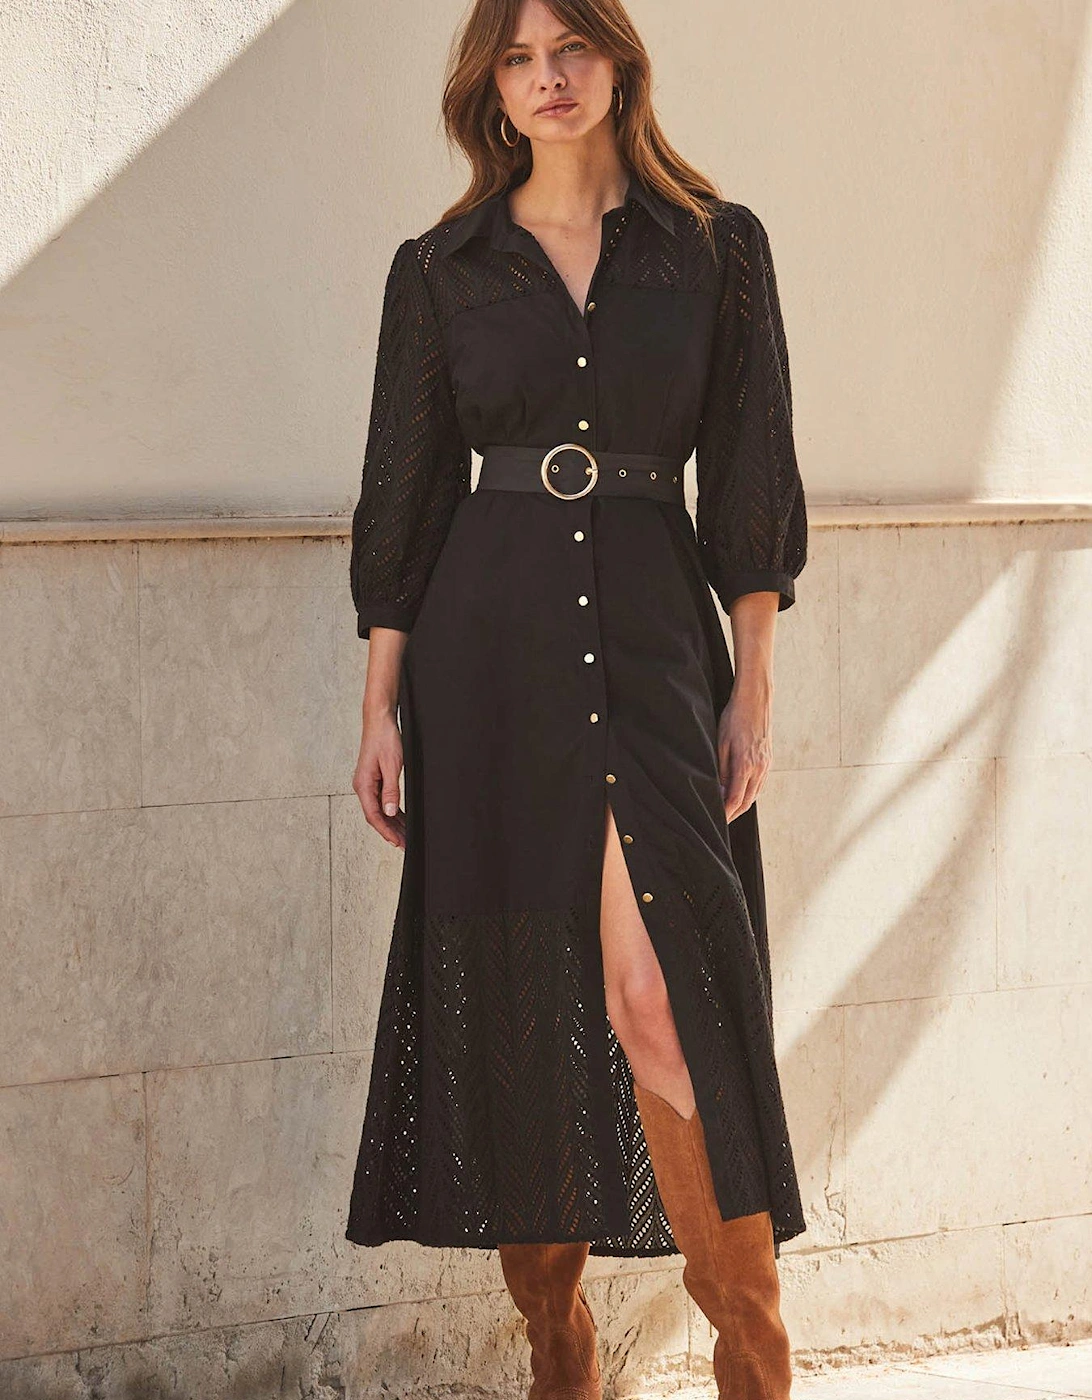 Broderie Sleeve Dress - Black, 6 of 5